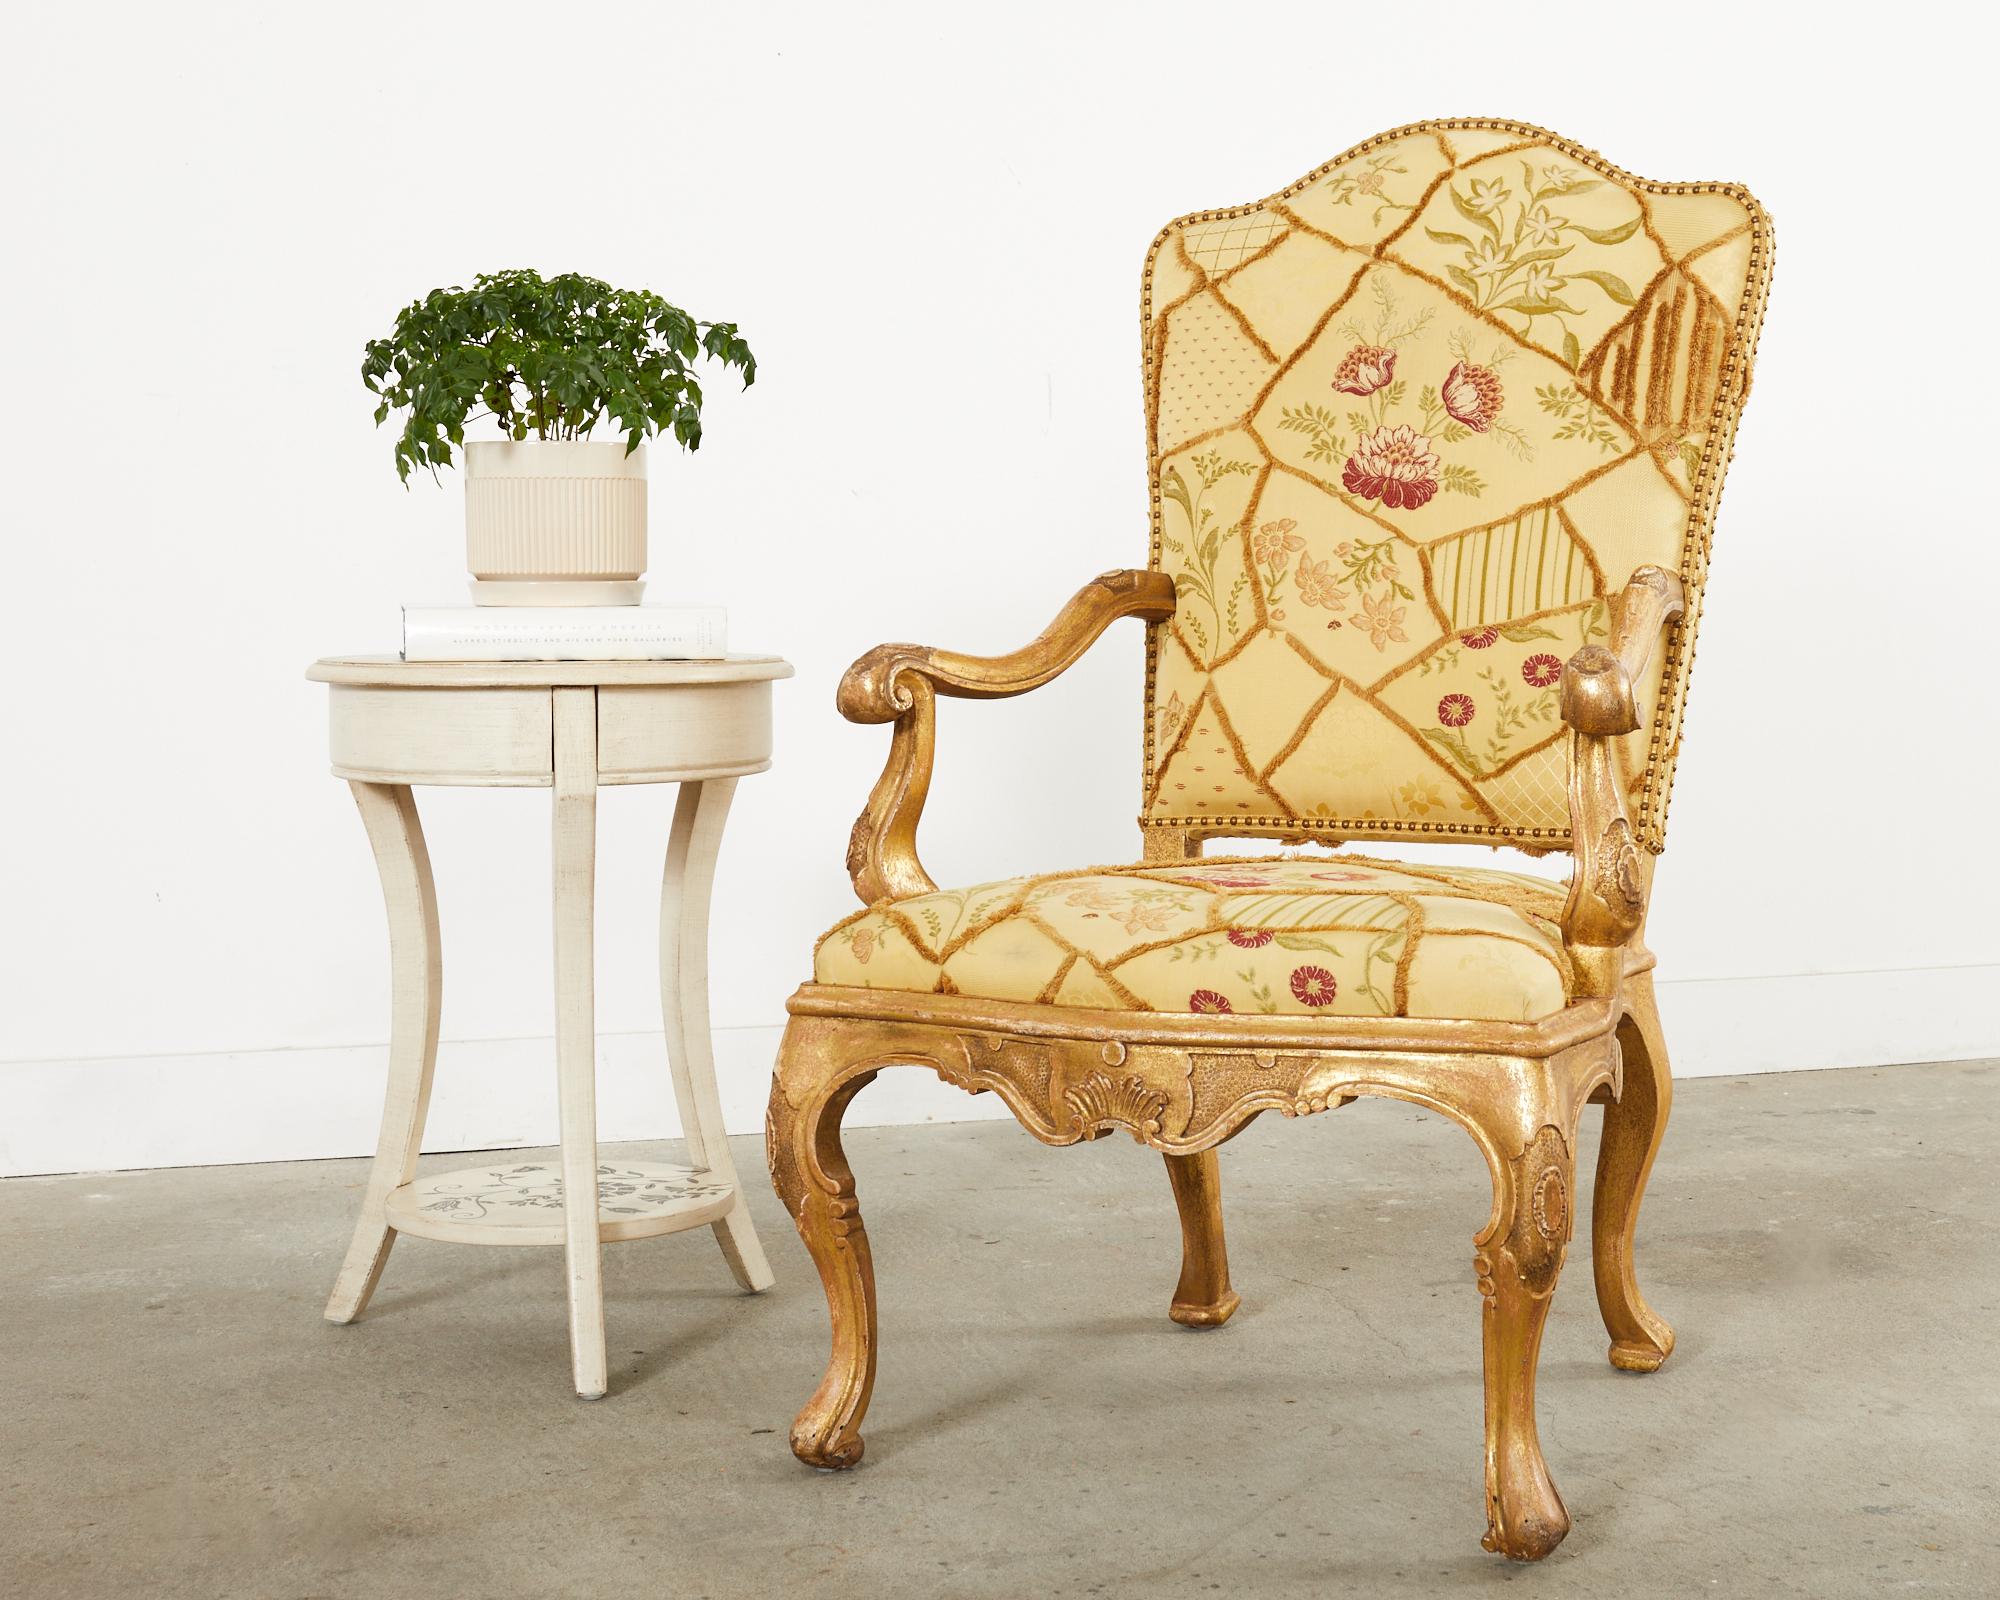 Opulent trône ou fauteuil de style baroque italien réalisé par Hendrix Allardyce Hollywood, CA. Le fauteuil présente un large cadre en hêtre sculpté à la main et décoré d'une spectaculaire finition dorée. Le bois est volontairement vieilli et patiné